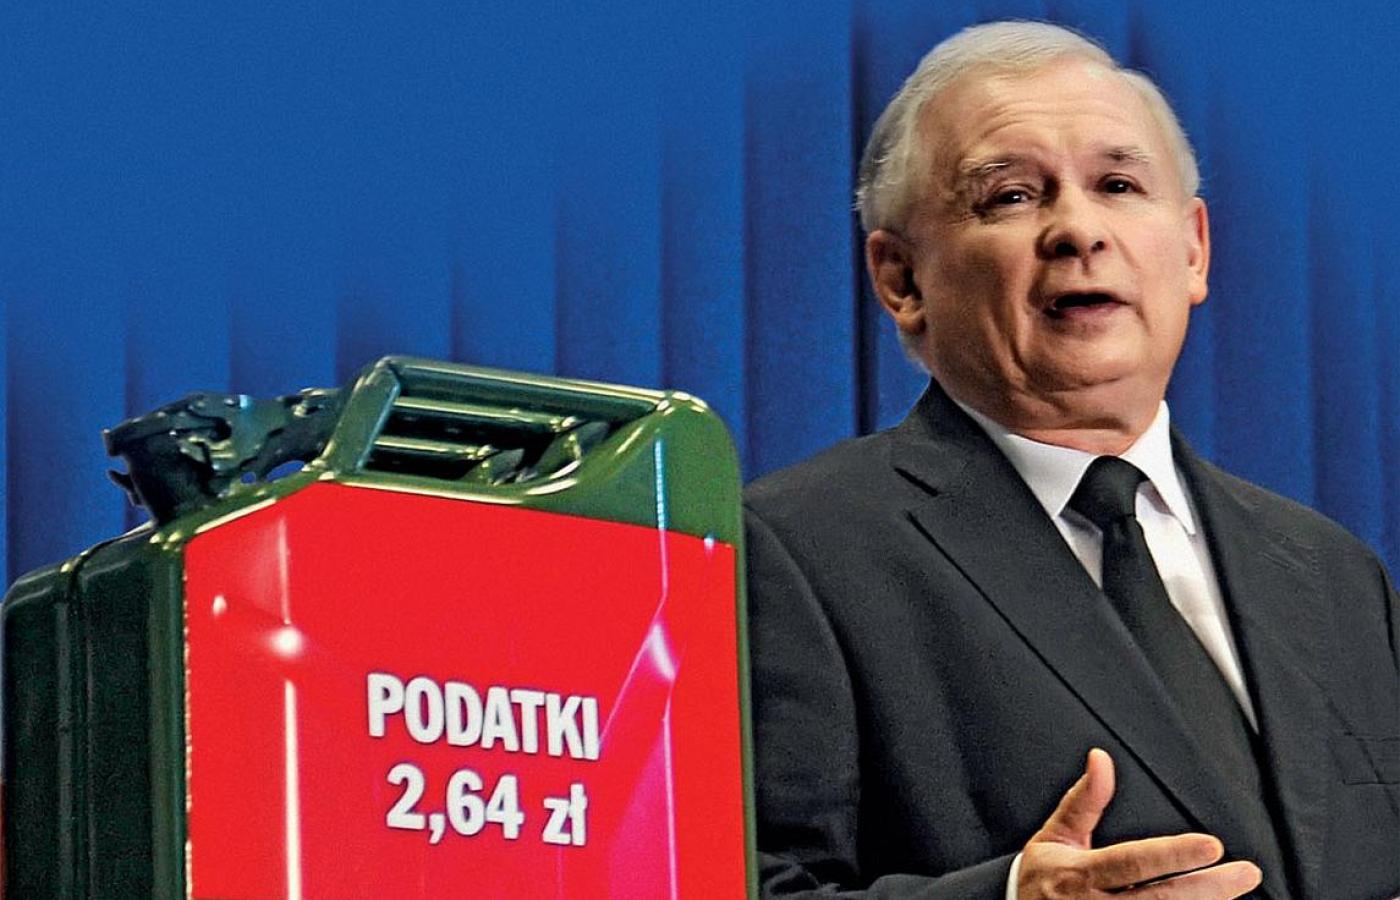 Jarosław Kaczyński podczas konferencji prasowej pod hasłem „Nie dla benzyny po 6 zł”, sierpień 2011 r. Teraz znów powiedział „nie”. Co powie jeszcze?